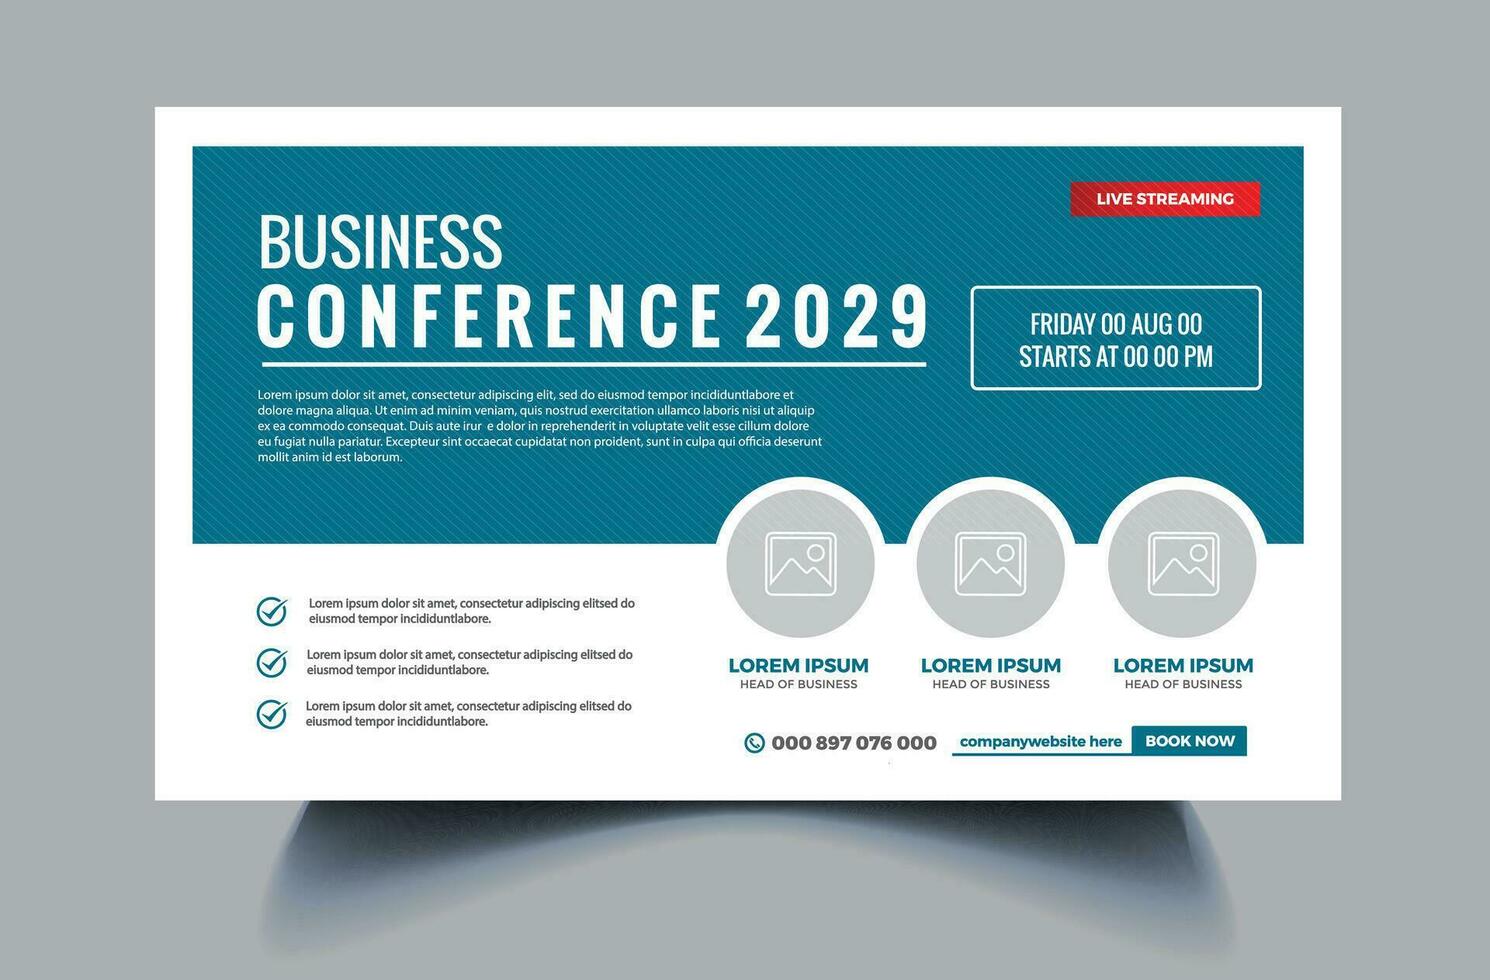 Online corporate business webinar conference horizontal web banner design or Conference live webinar banner invitation design. Free Vector